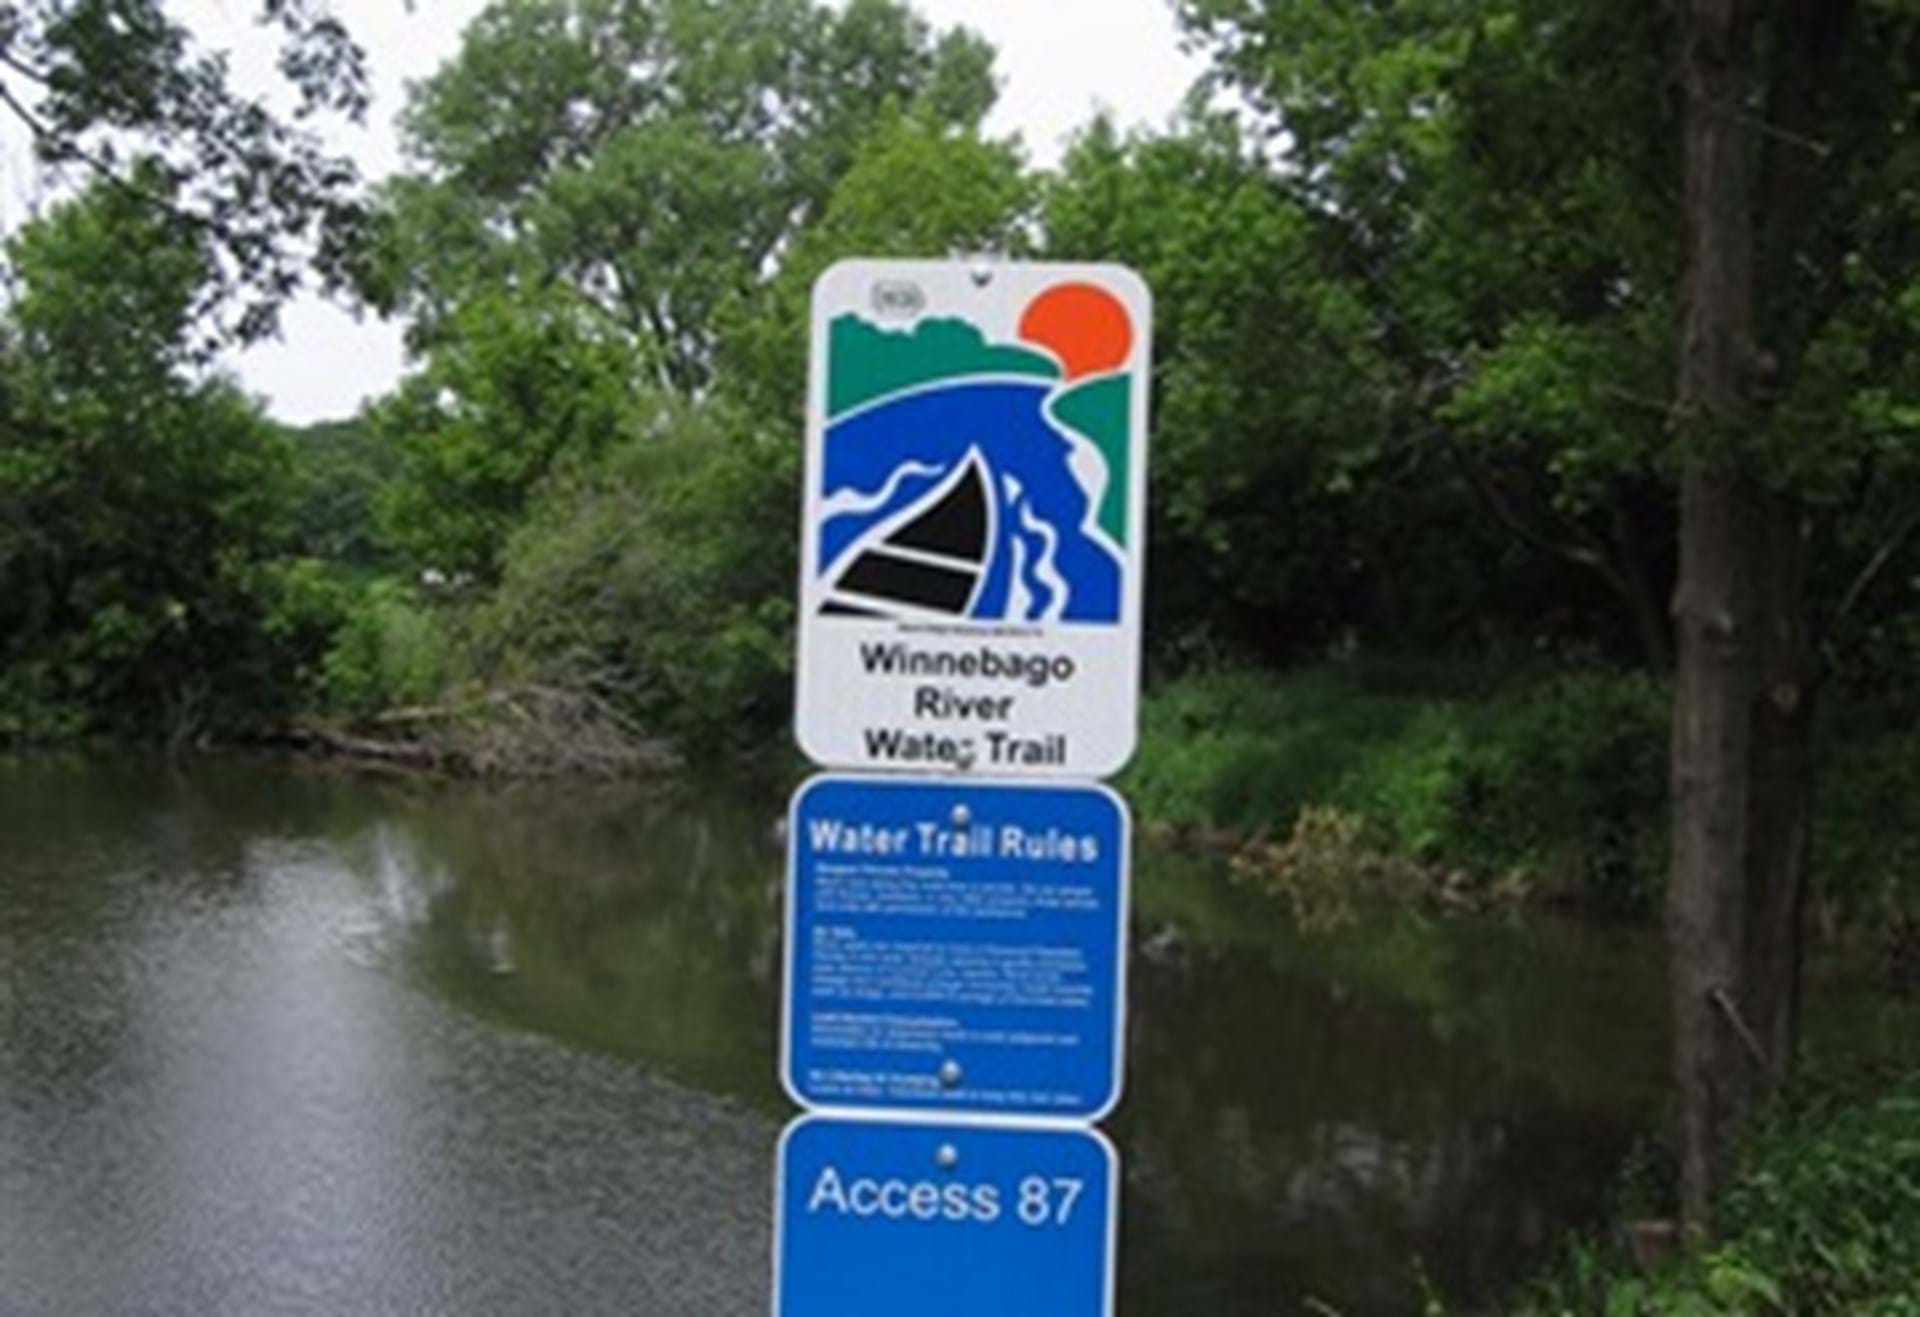 Dahle Park River Trail Access